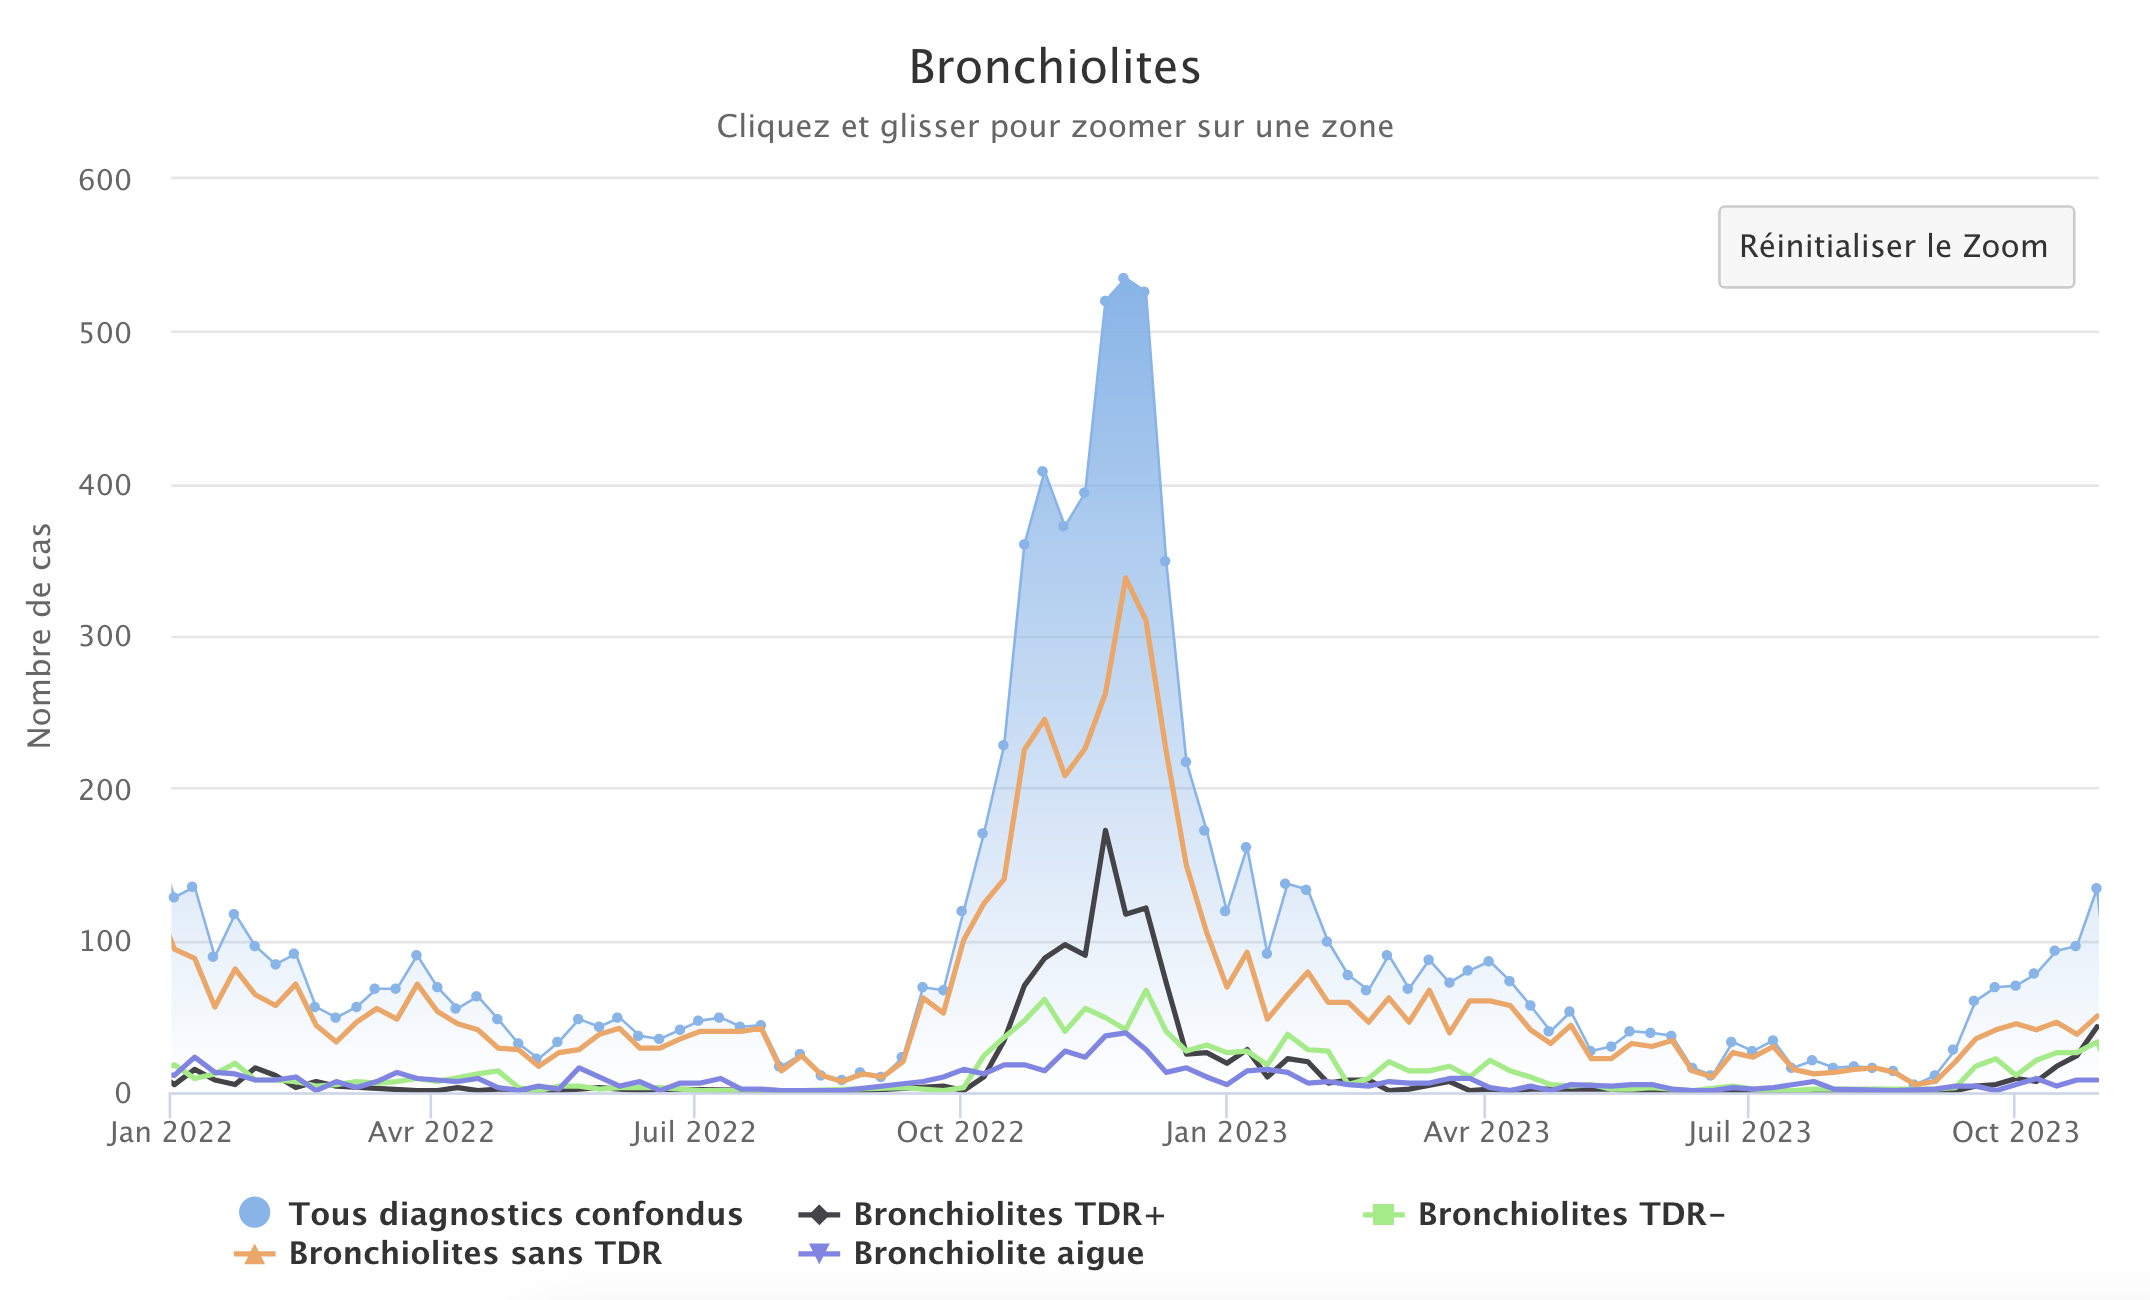 Bronchiolites 301023